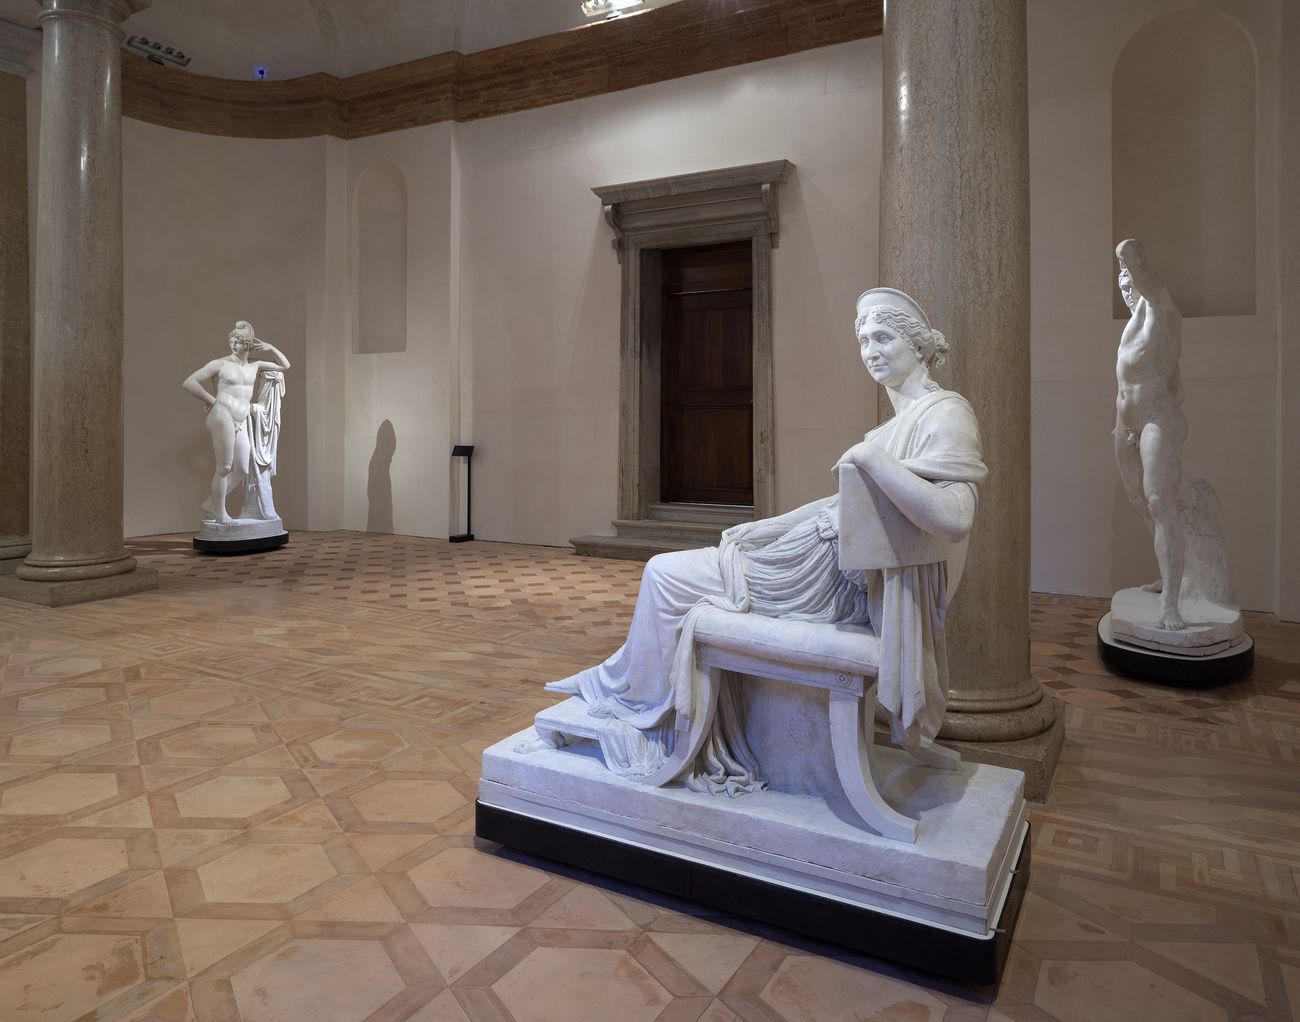 Gallerie dell’Accademia, Venezia. Photo © Matteo De Fina